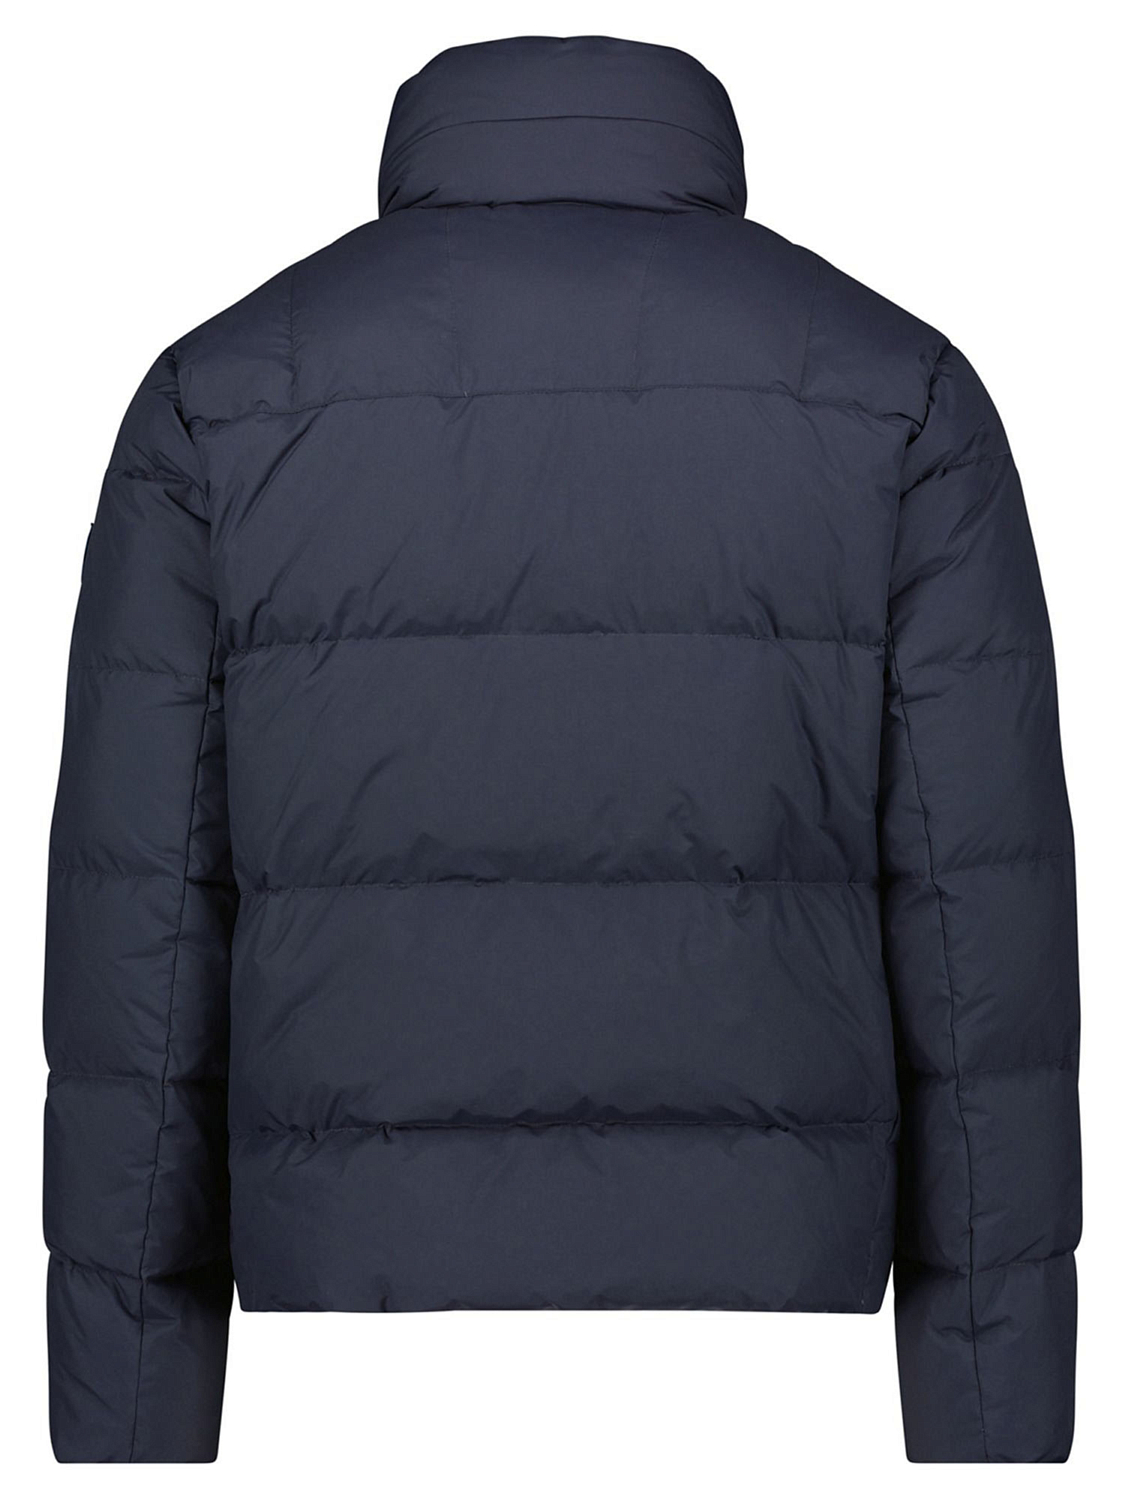 Куртка Dolomite Jacket M's Fitzroy Wood Blue